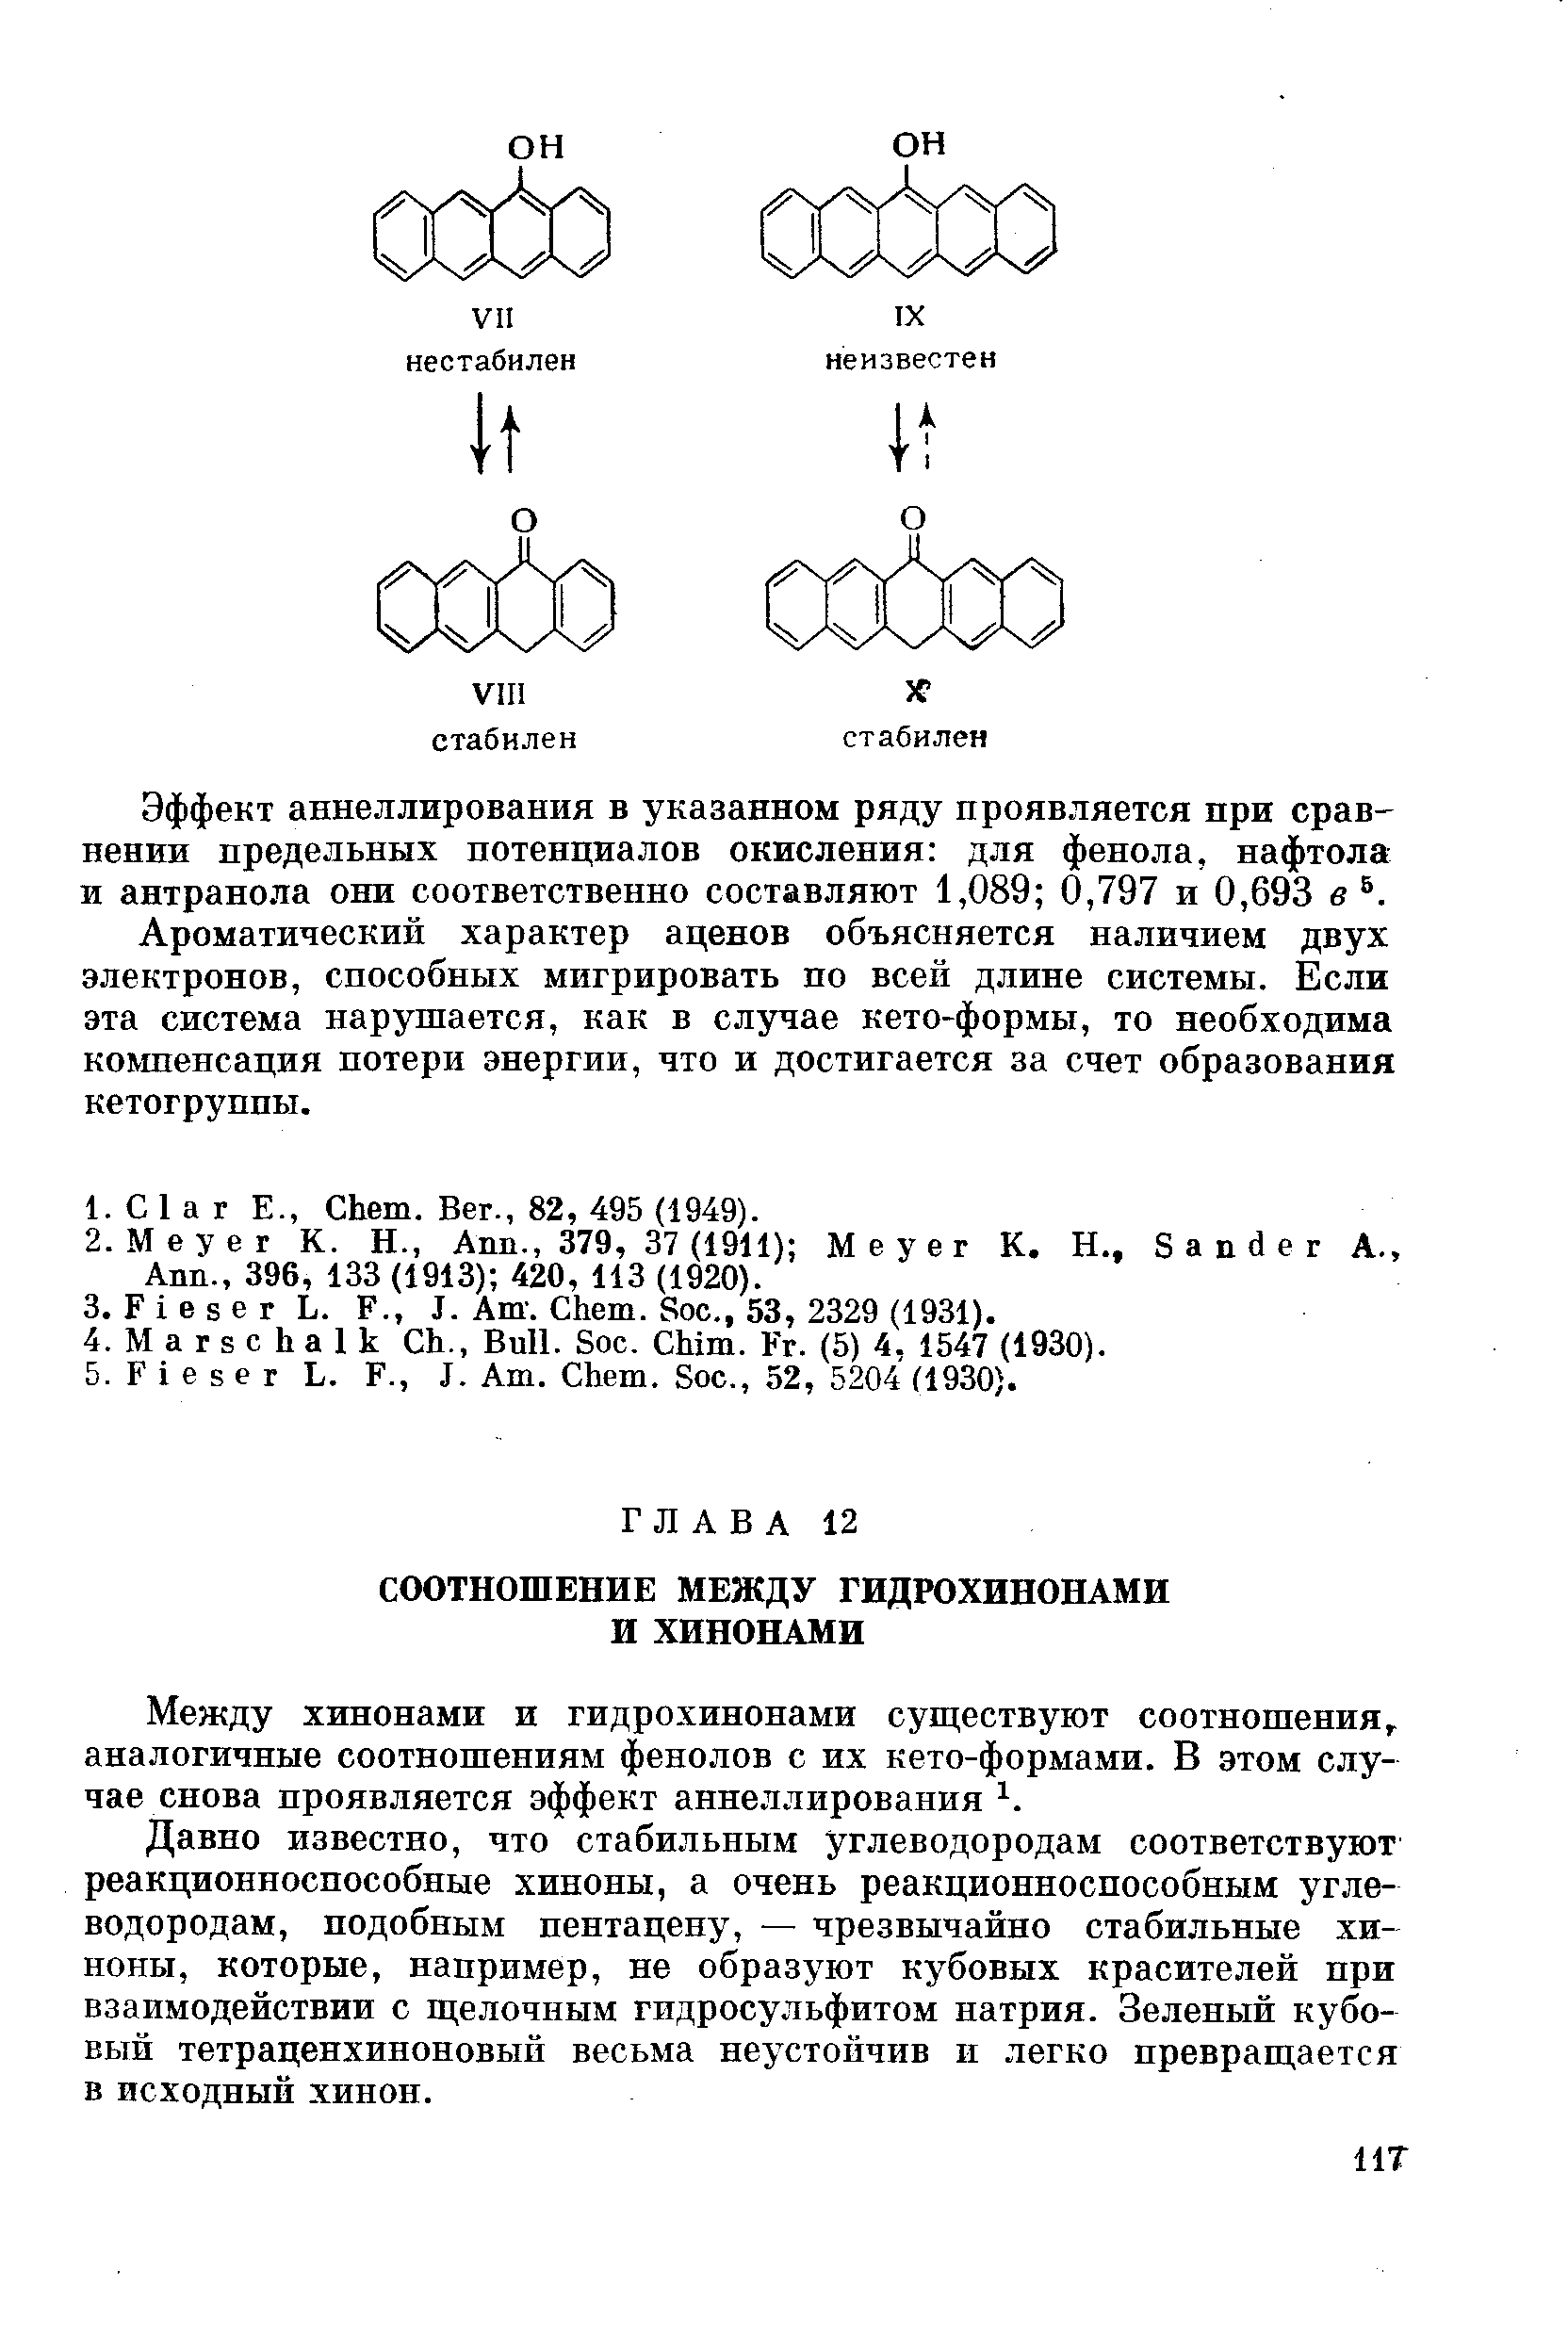 Давно известно, что стабильным углеводородам соответствуют реакционноспособные хиноны, а очень реакционноспособным углеводородам, подобным пентацену, — чрезвычайно стабильные хиноны, которые, например, не образуют кубовых красителей при взаимодействии с ш елочным гидросульфитом натрия. Зеленый кубовый тетраценхиноновый весьма неустойчив и легко превращается в исходный хинон.